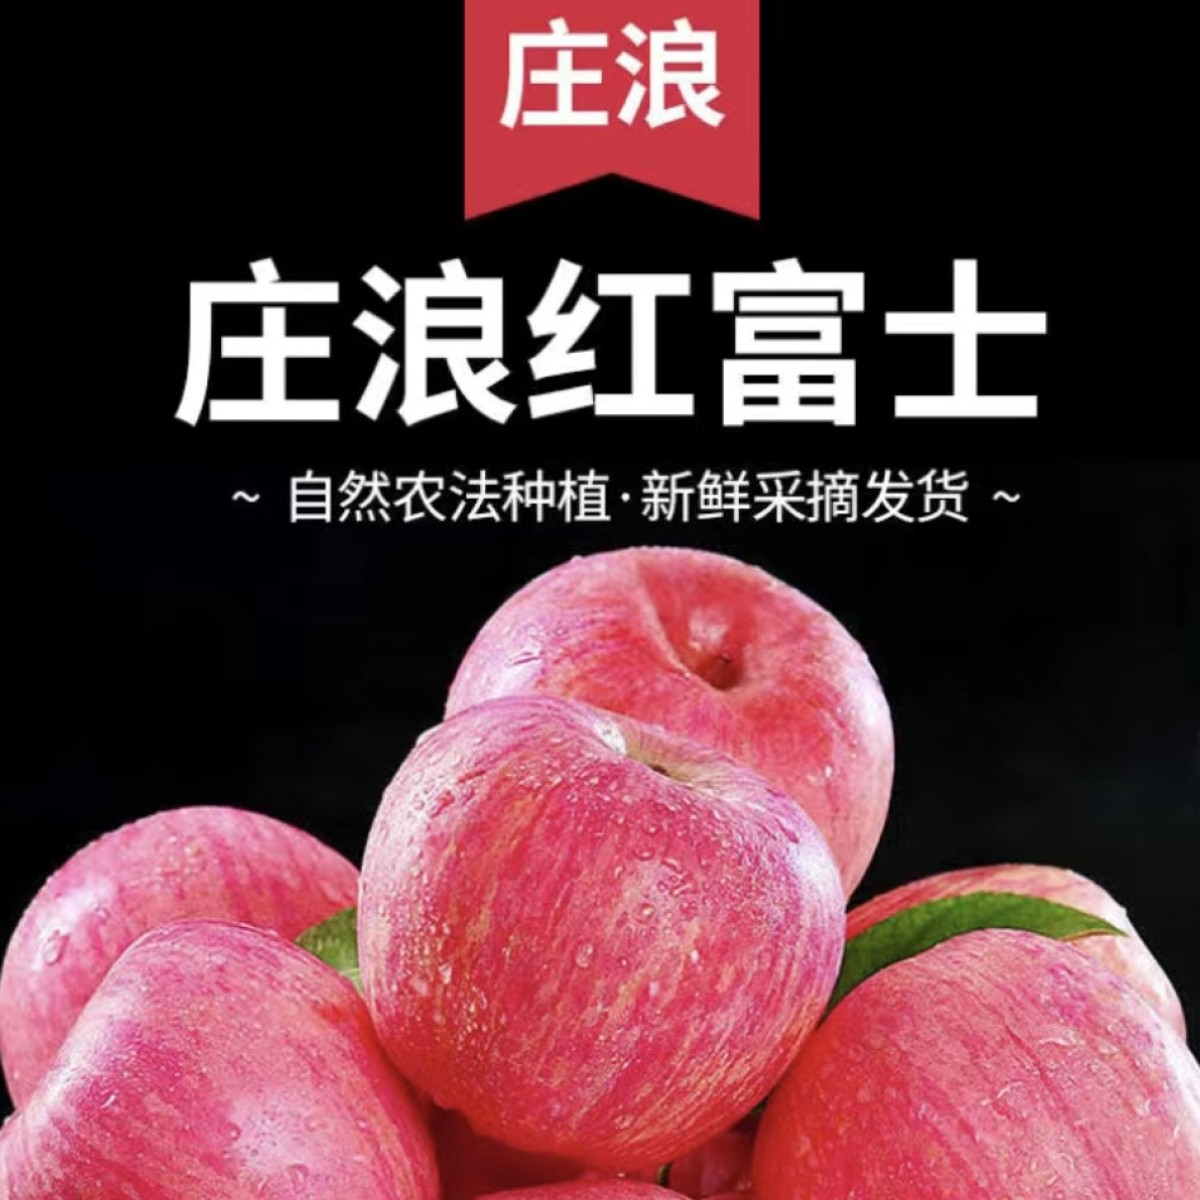 2021陕西延安宜川壶口高原特产红富士苹果食用新鲜90果18颗包邮_薛晓龙7675